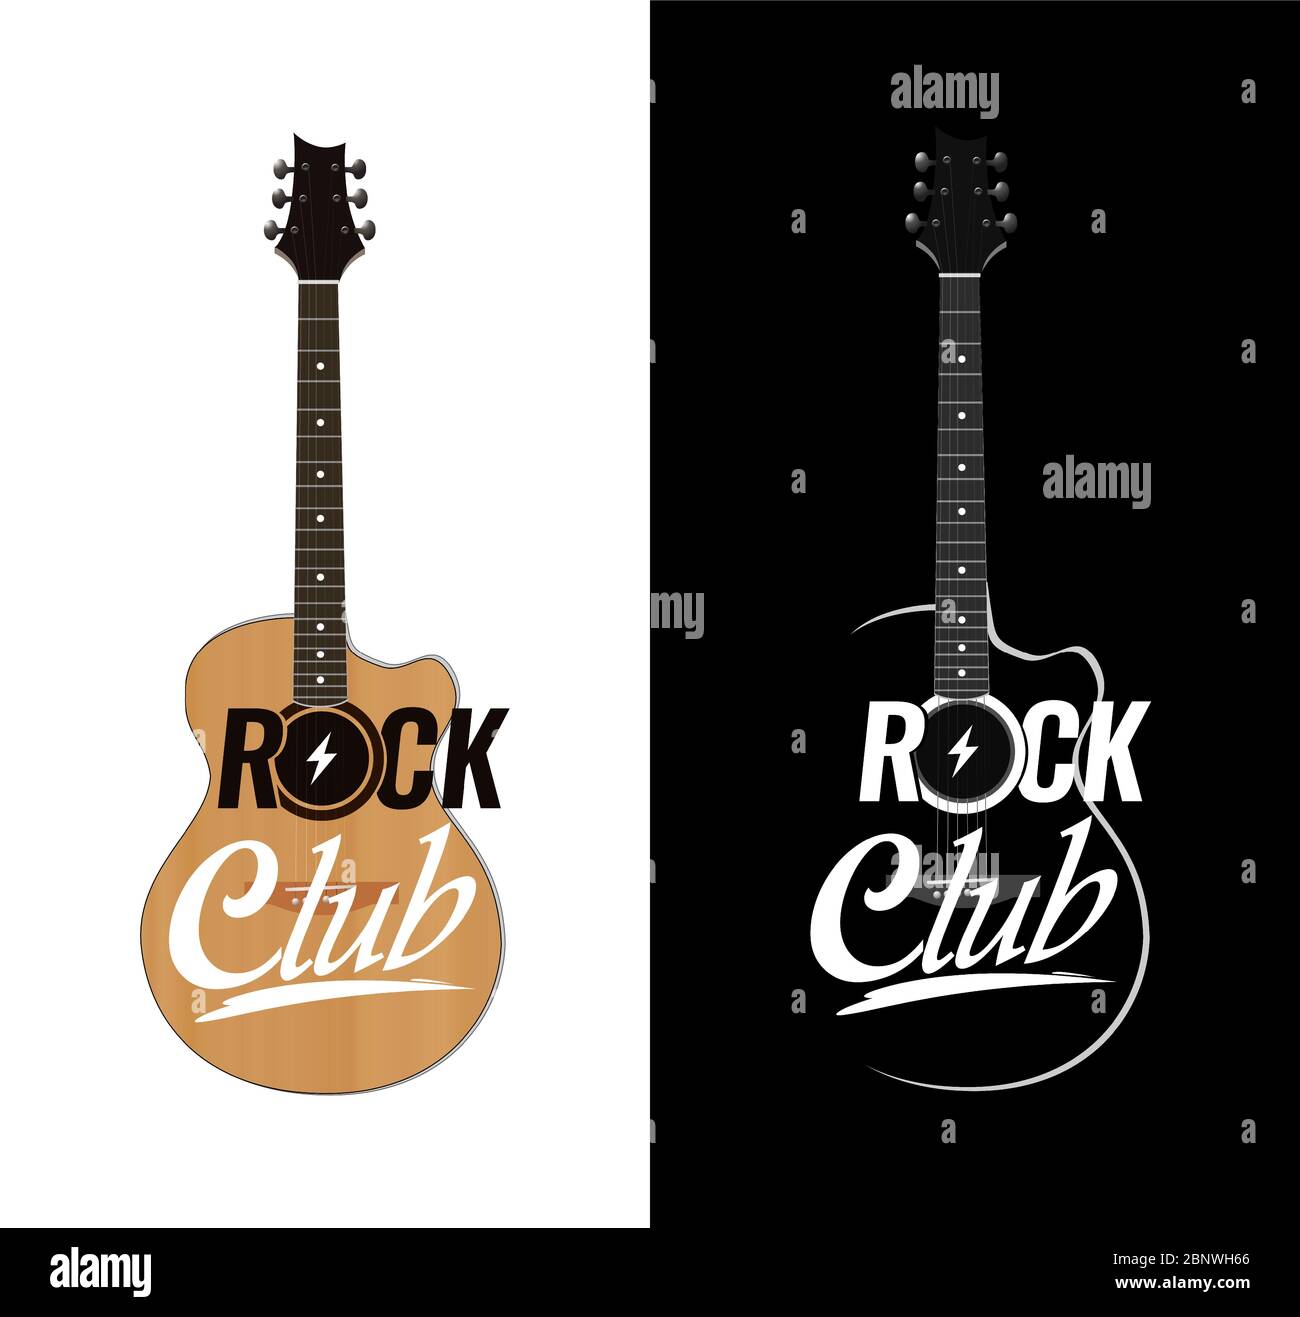 Vector Akustikgitarre im realistischen Stil für Rock Club mit Schriftzug. Design Illustration für Placard oder Banner of Music Event, Party oder Konzert. Stock Vektor